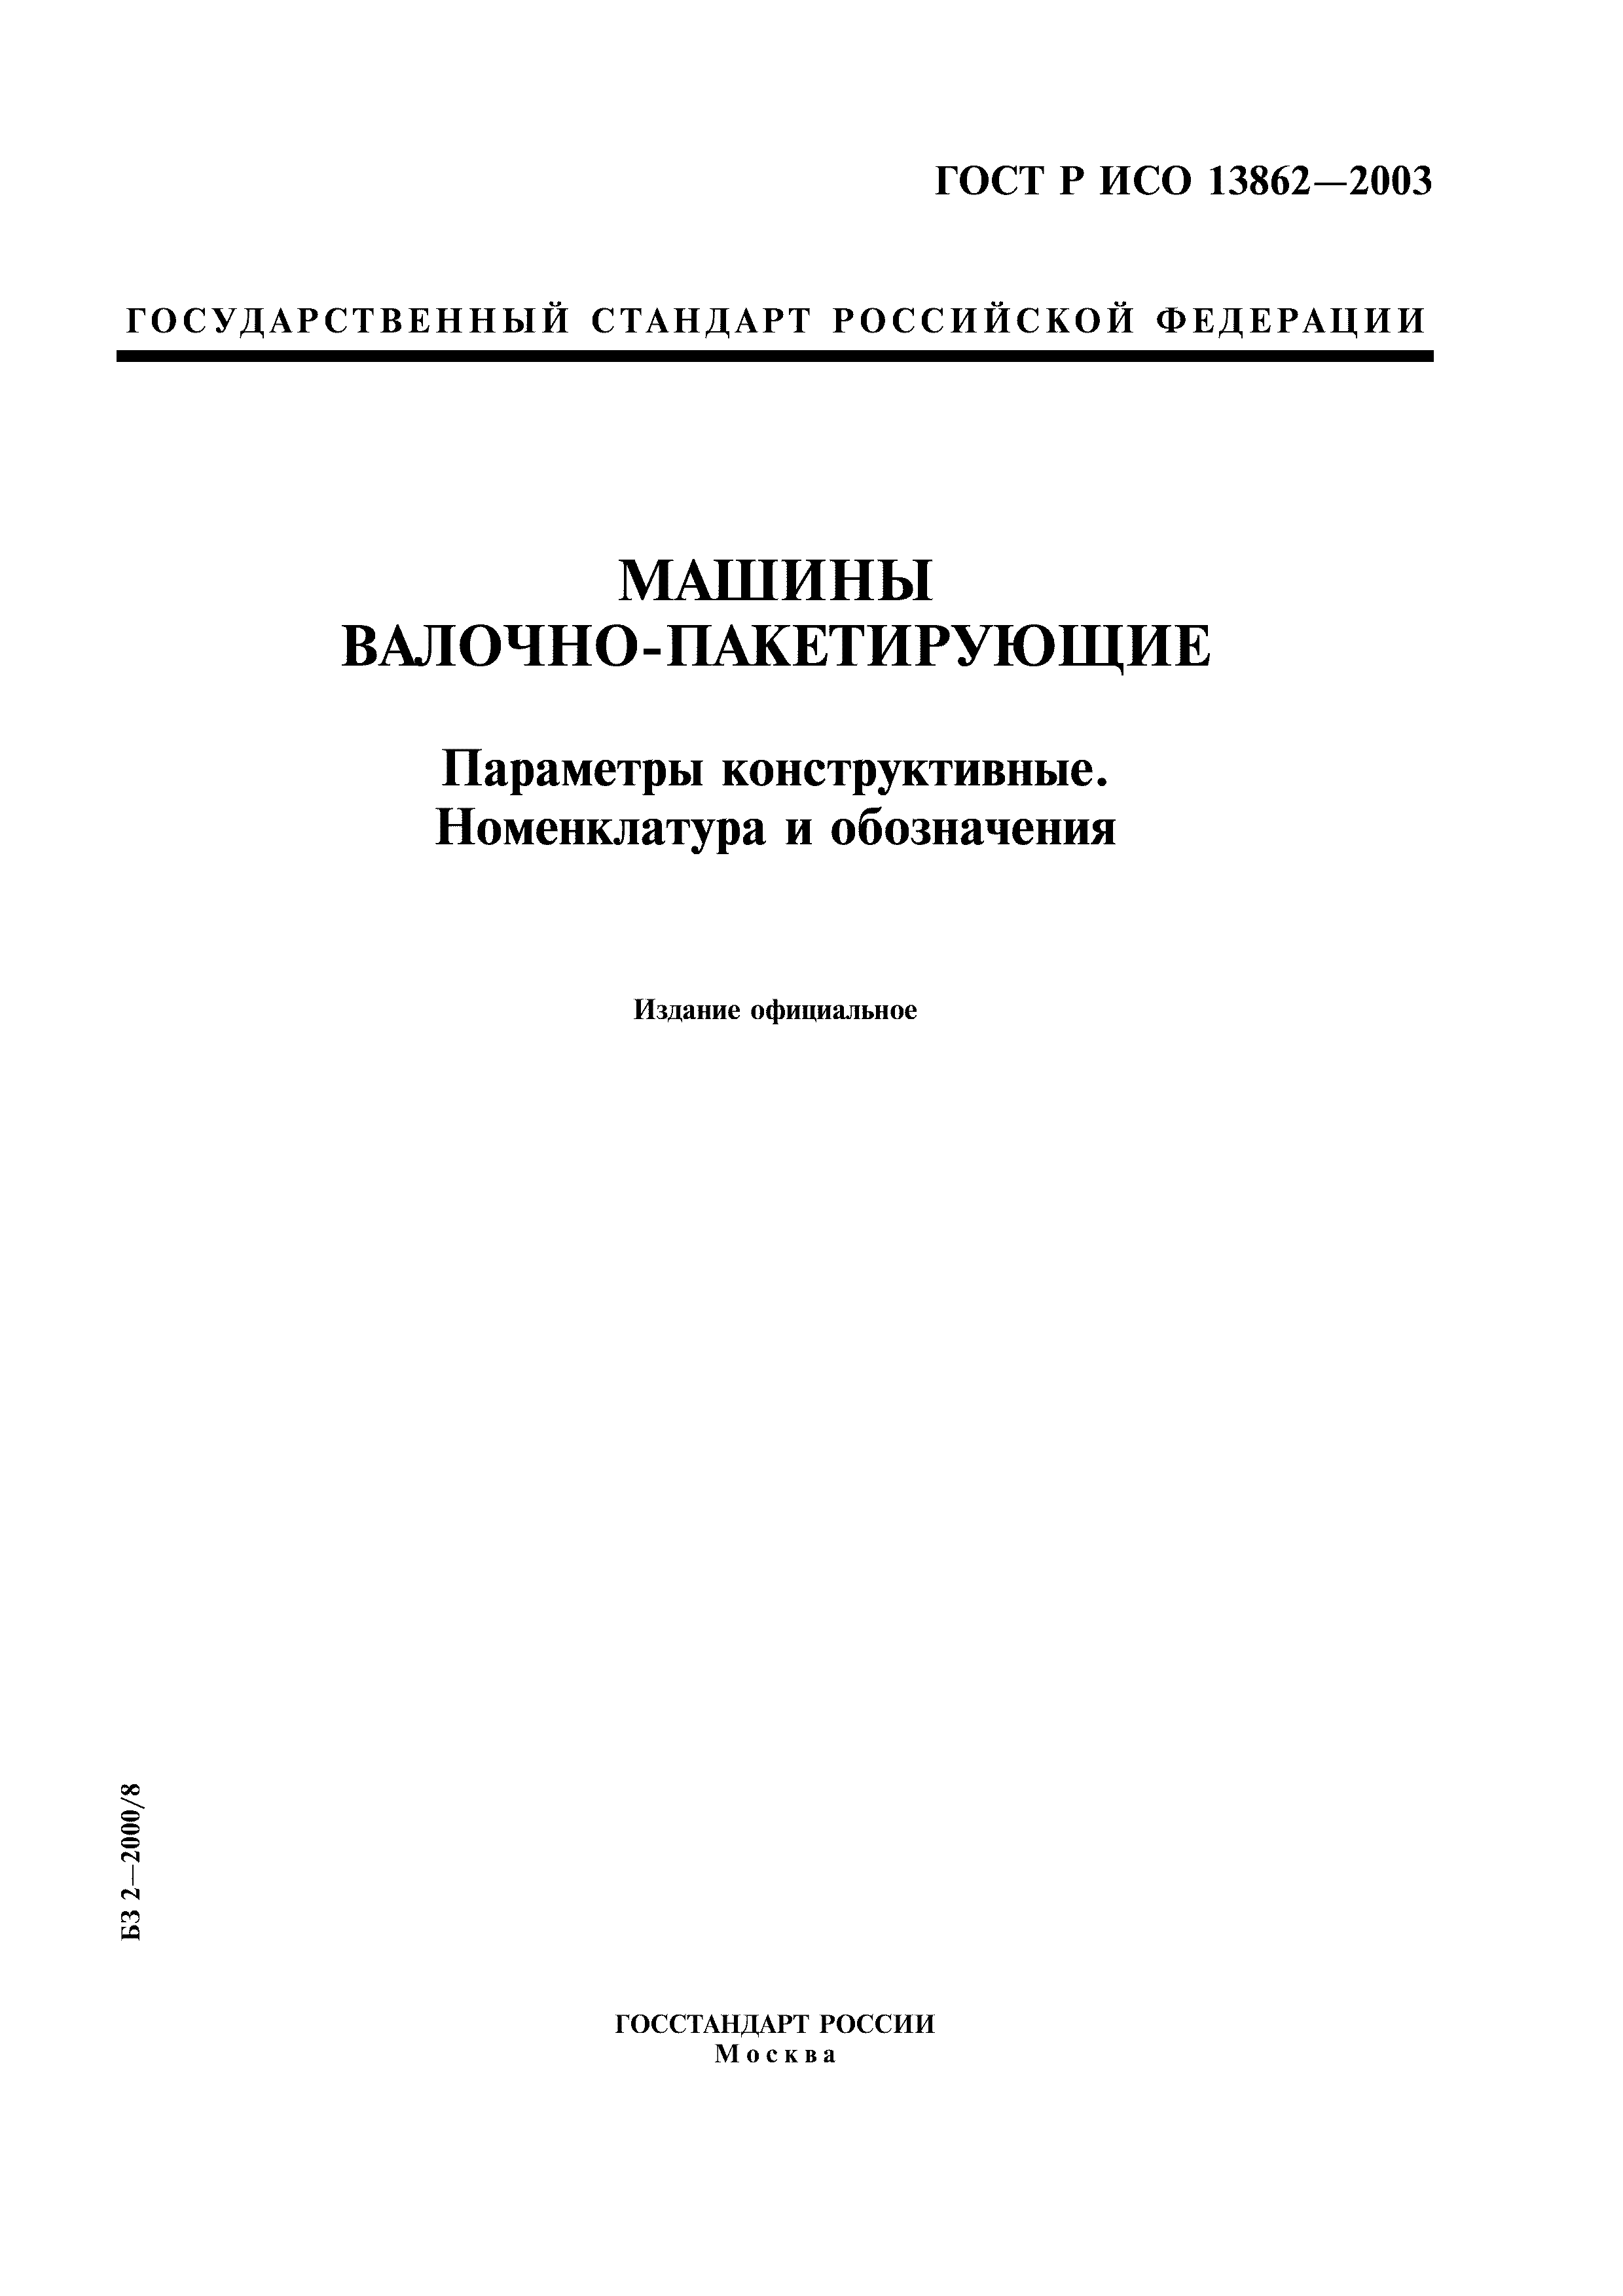 ГОСТ Р ИСО 13862-2003